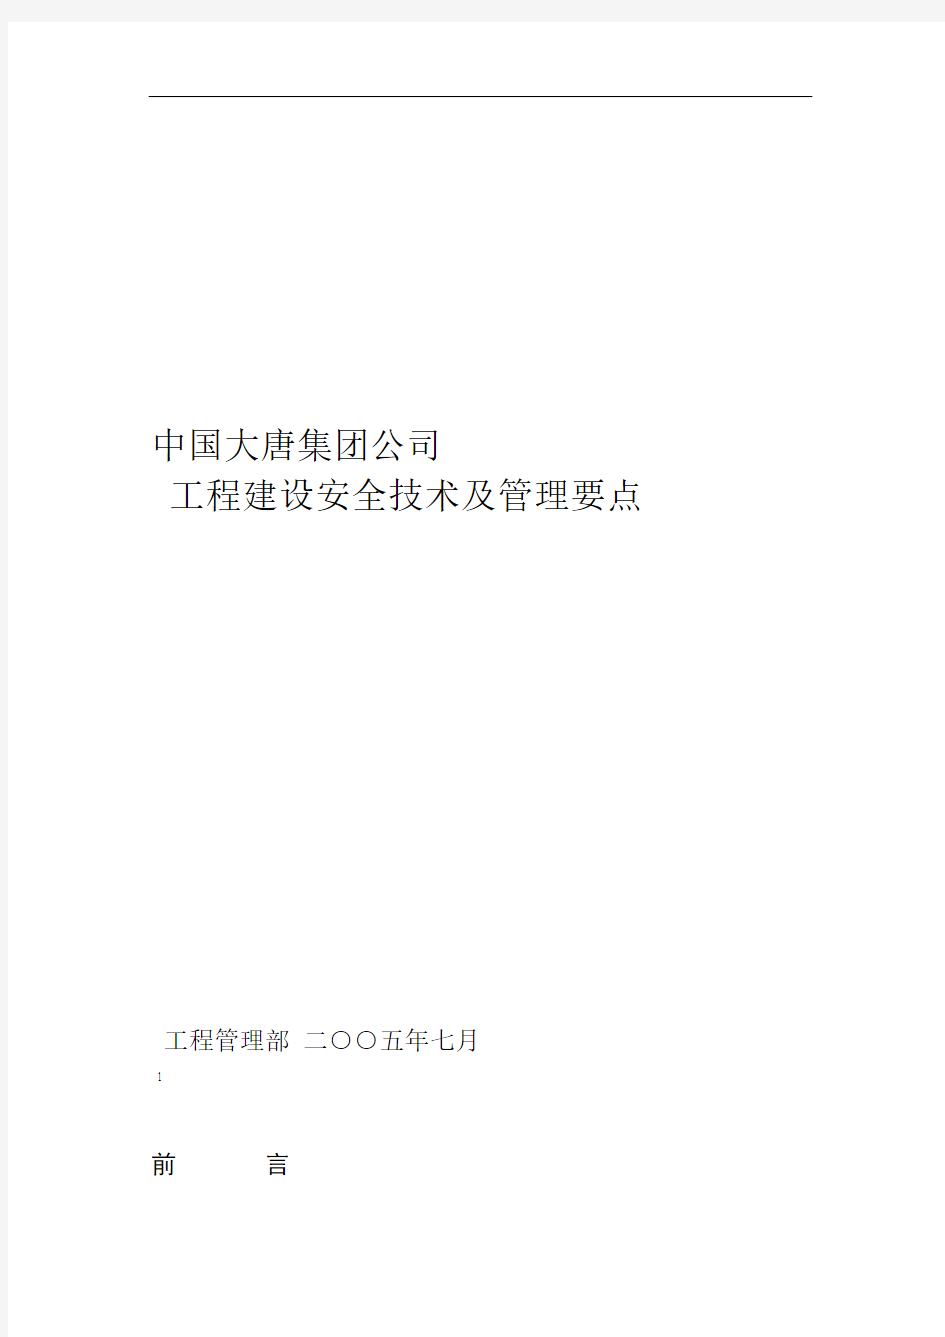 中国大唐集团公司工程建设安全技术及管理要点36页